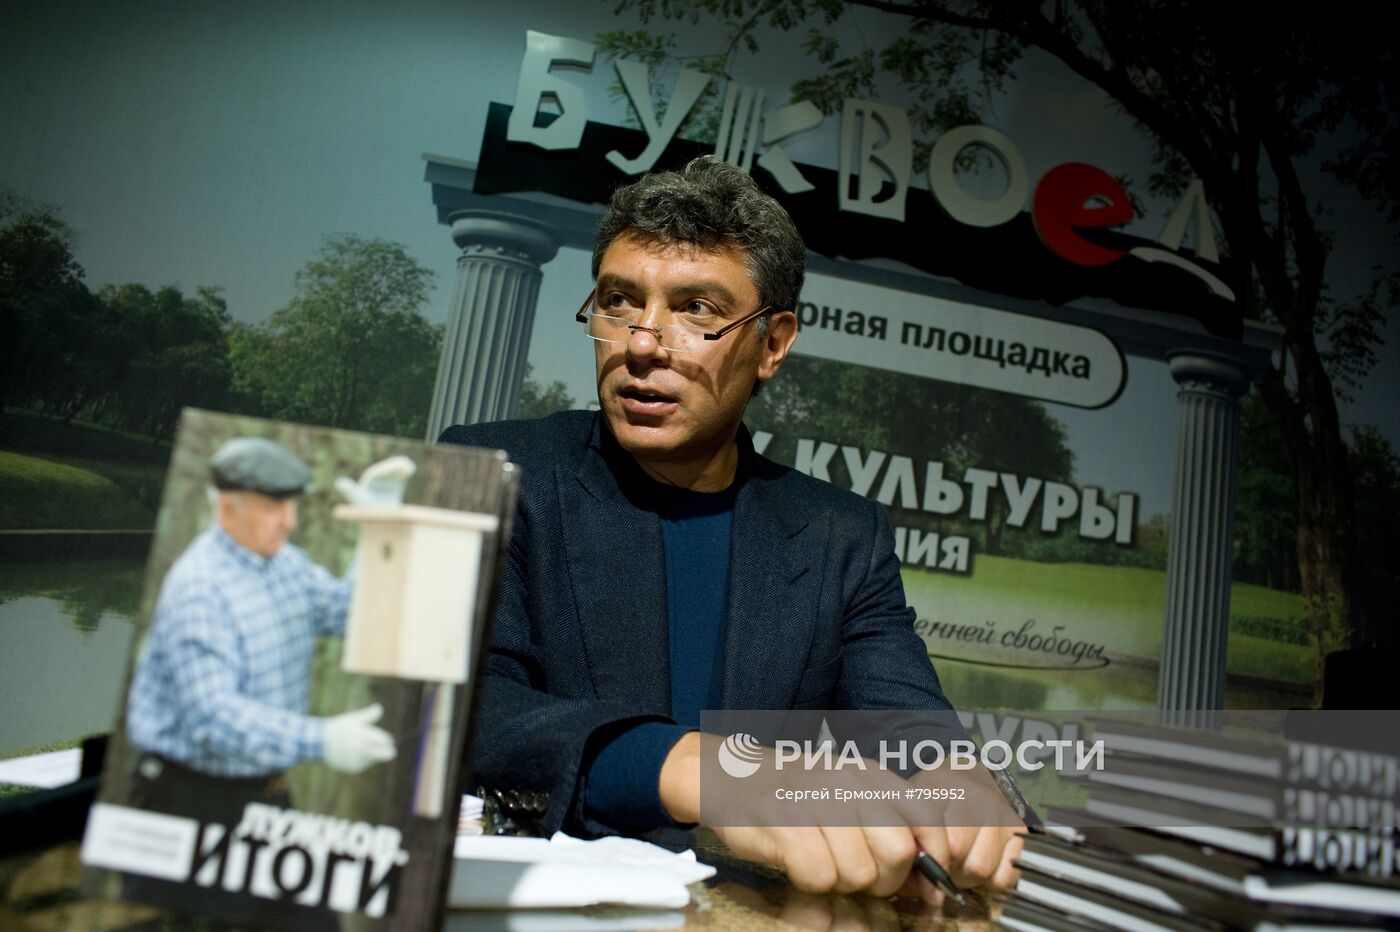 Презентация книги Б.Немцова "Лужков Итоги" в Санкт-Петербурге